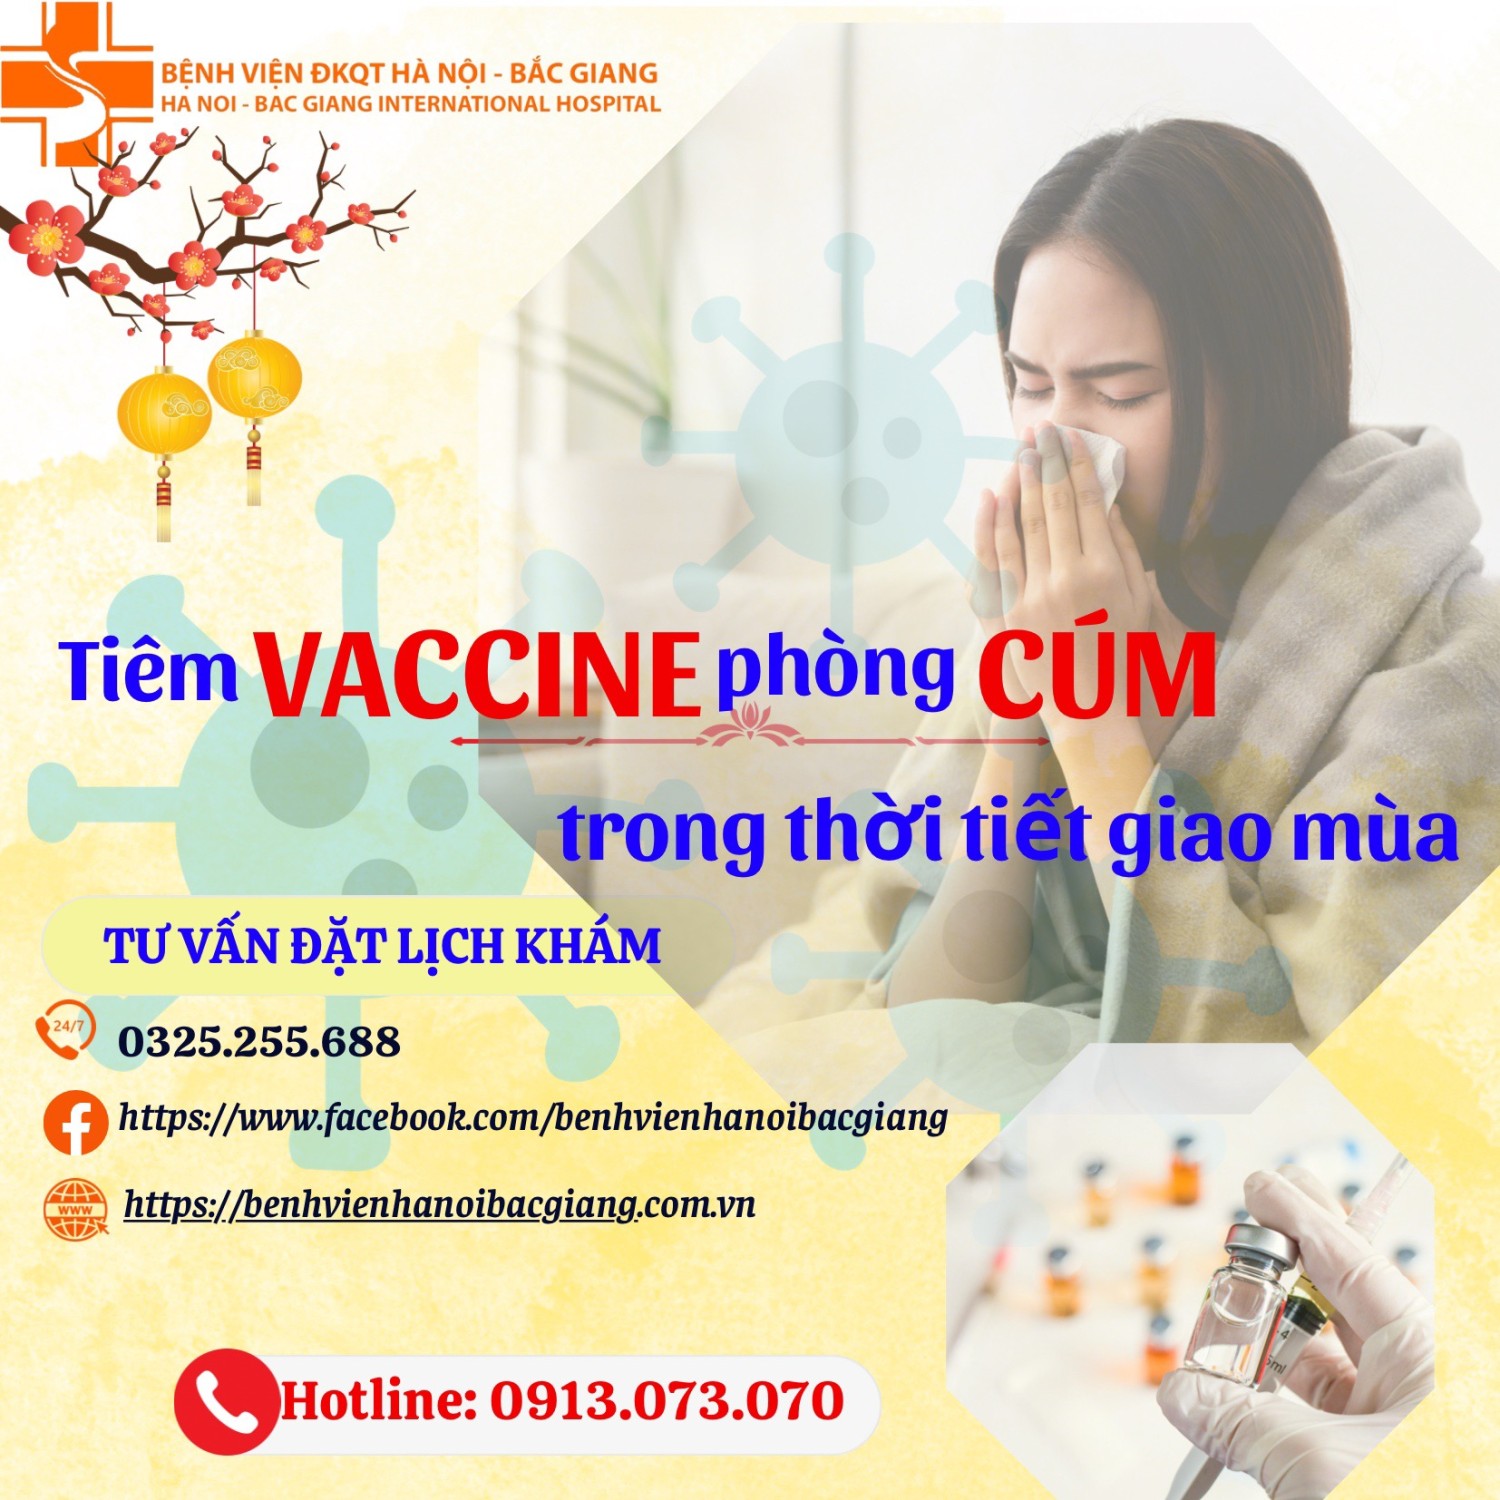 Tiêm vaccine phòng cúm trong thời tiết giao mùa